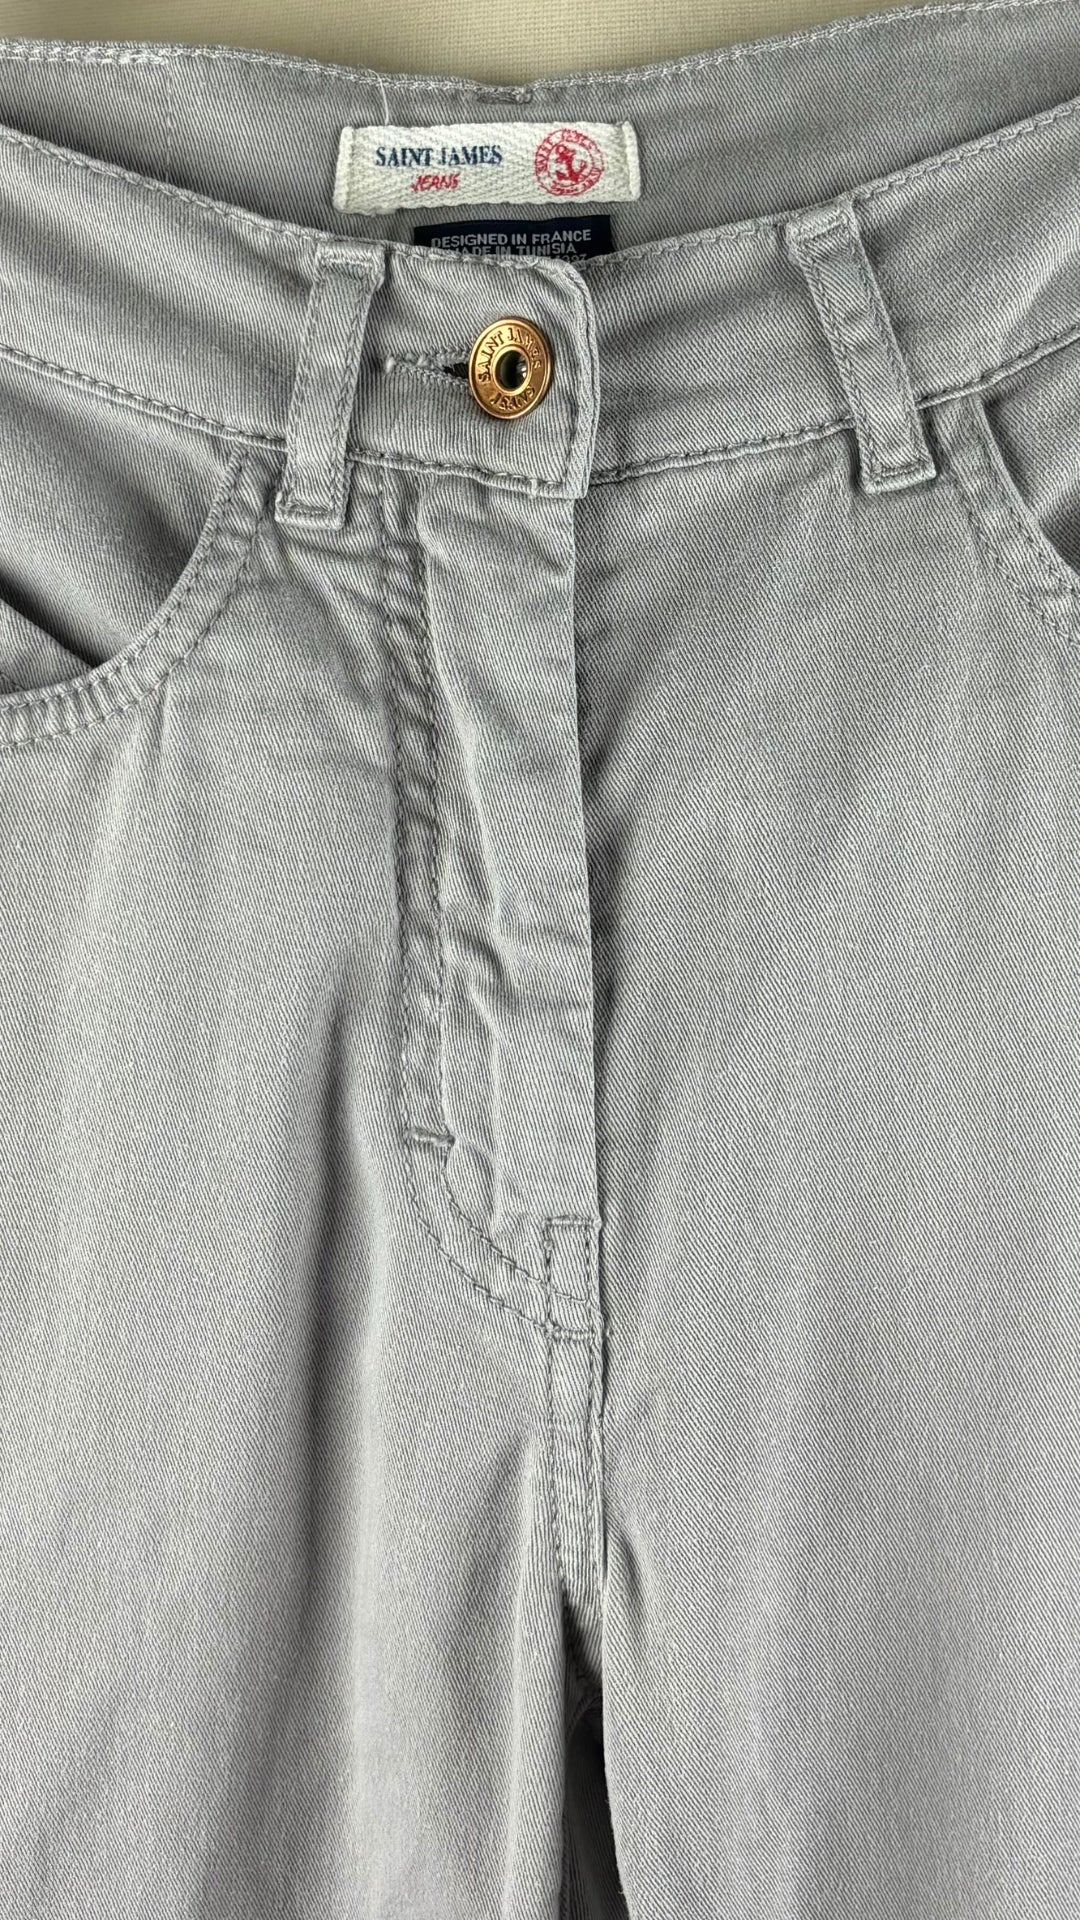 Pantalon style jeans gris coupe droite taille moyenne Saint James, taille 4 (xs). Vue de la taille.